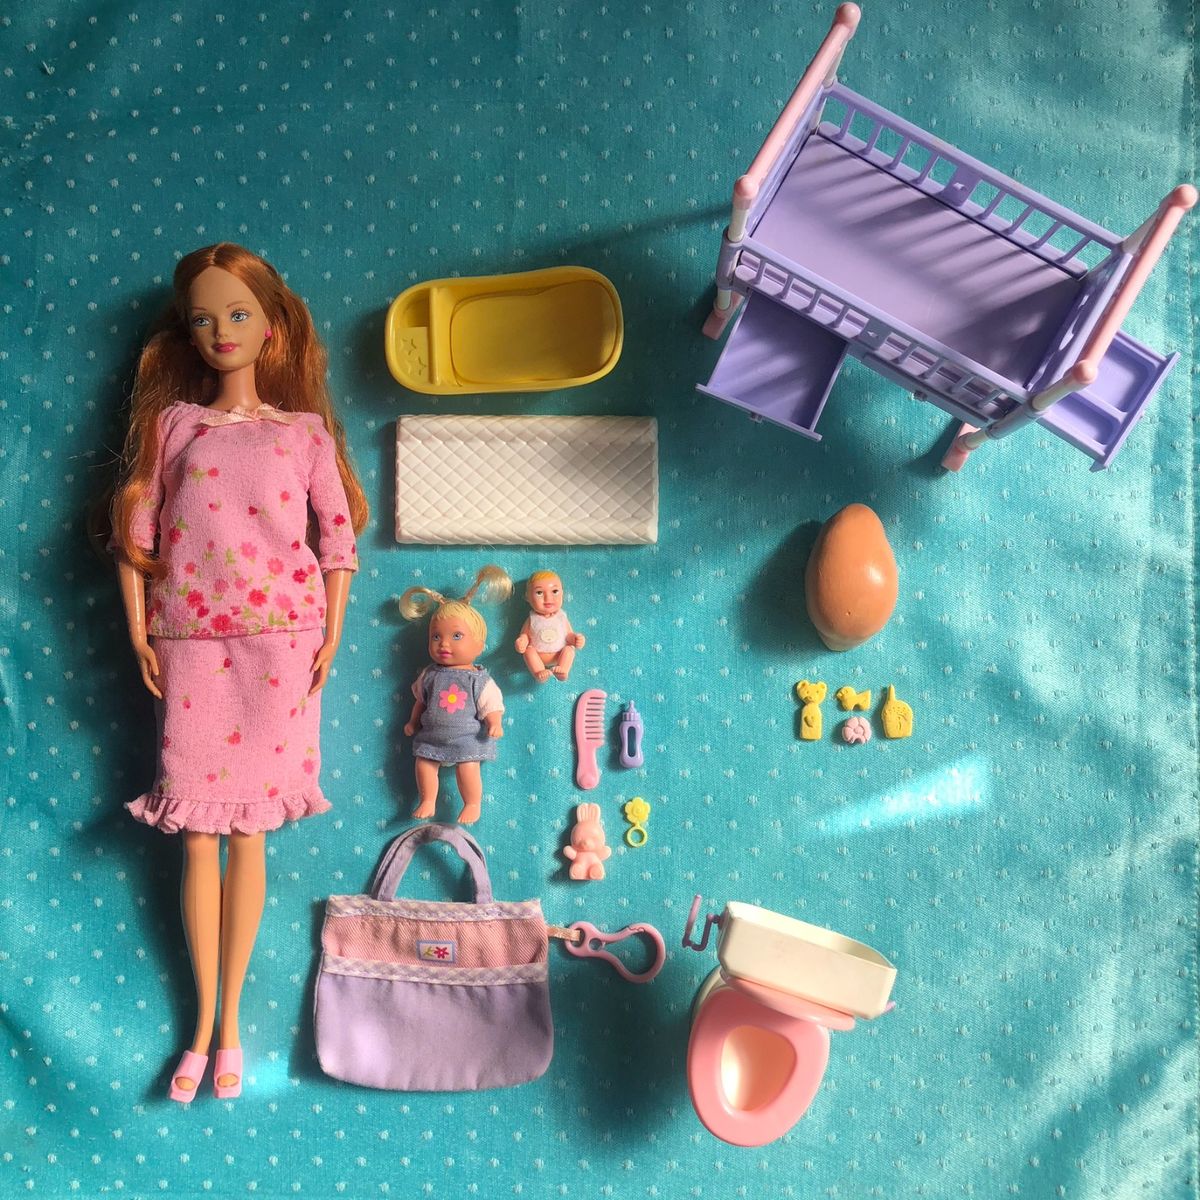 Boneca Barbie Midge Happy Family Mattel grávida com barriga bebê e quarto  completo com acessórios